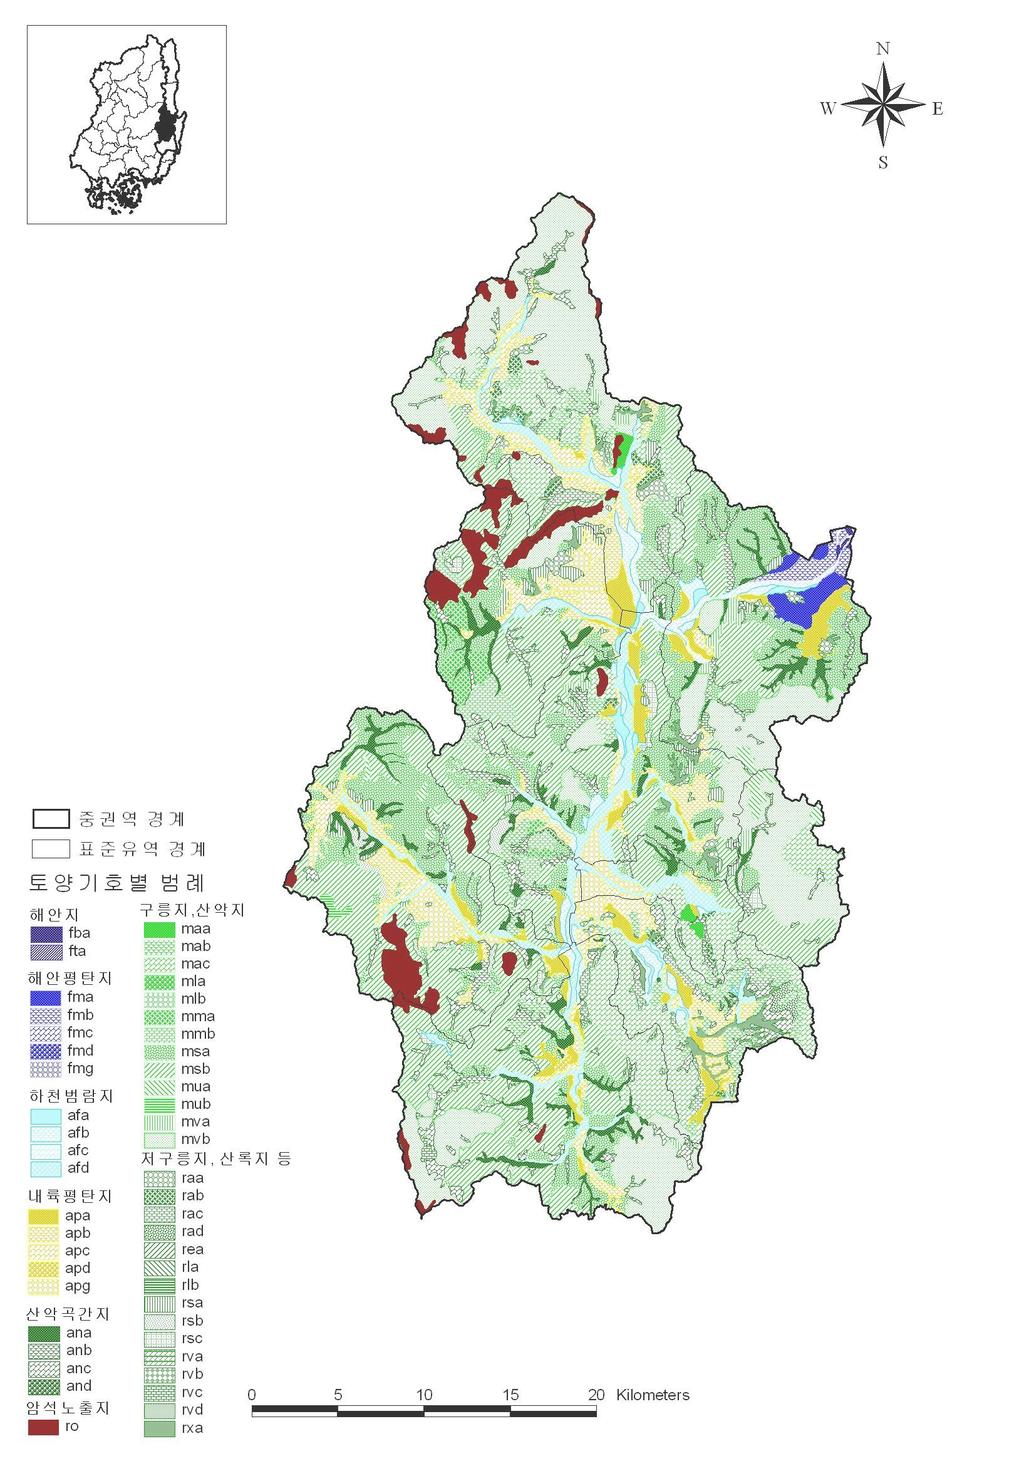 매우양호한지역의토양비율은 47.5% 로낙동강권역평균보다낮게 나타남. 암석노출지는중권역면적의 3.